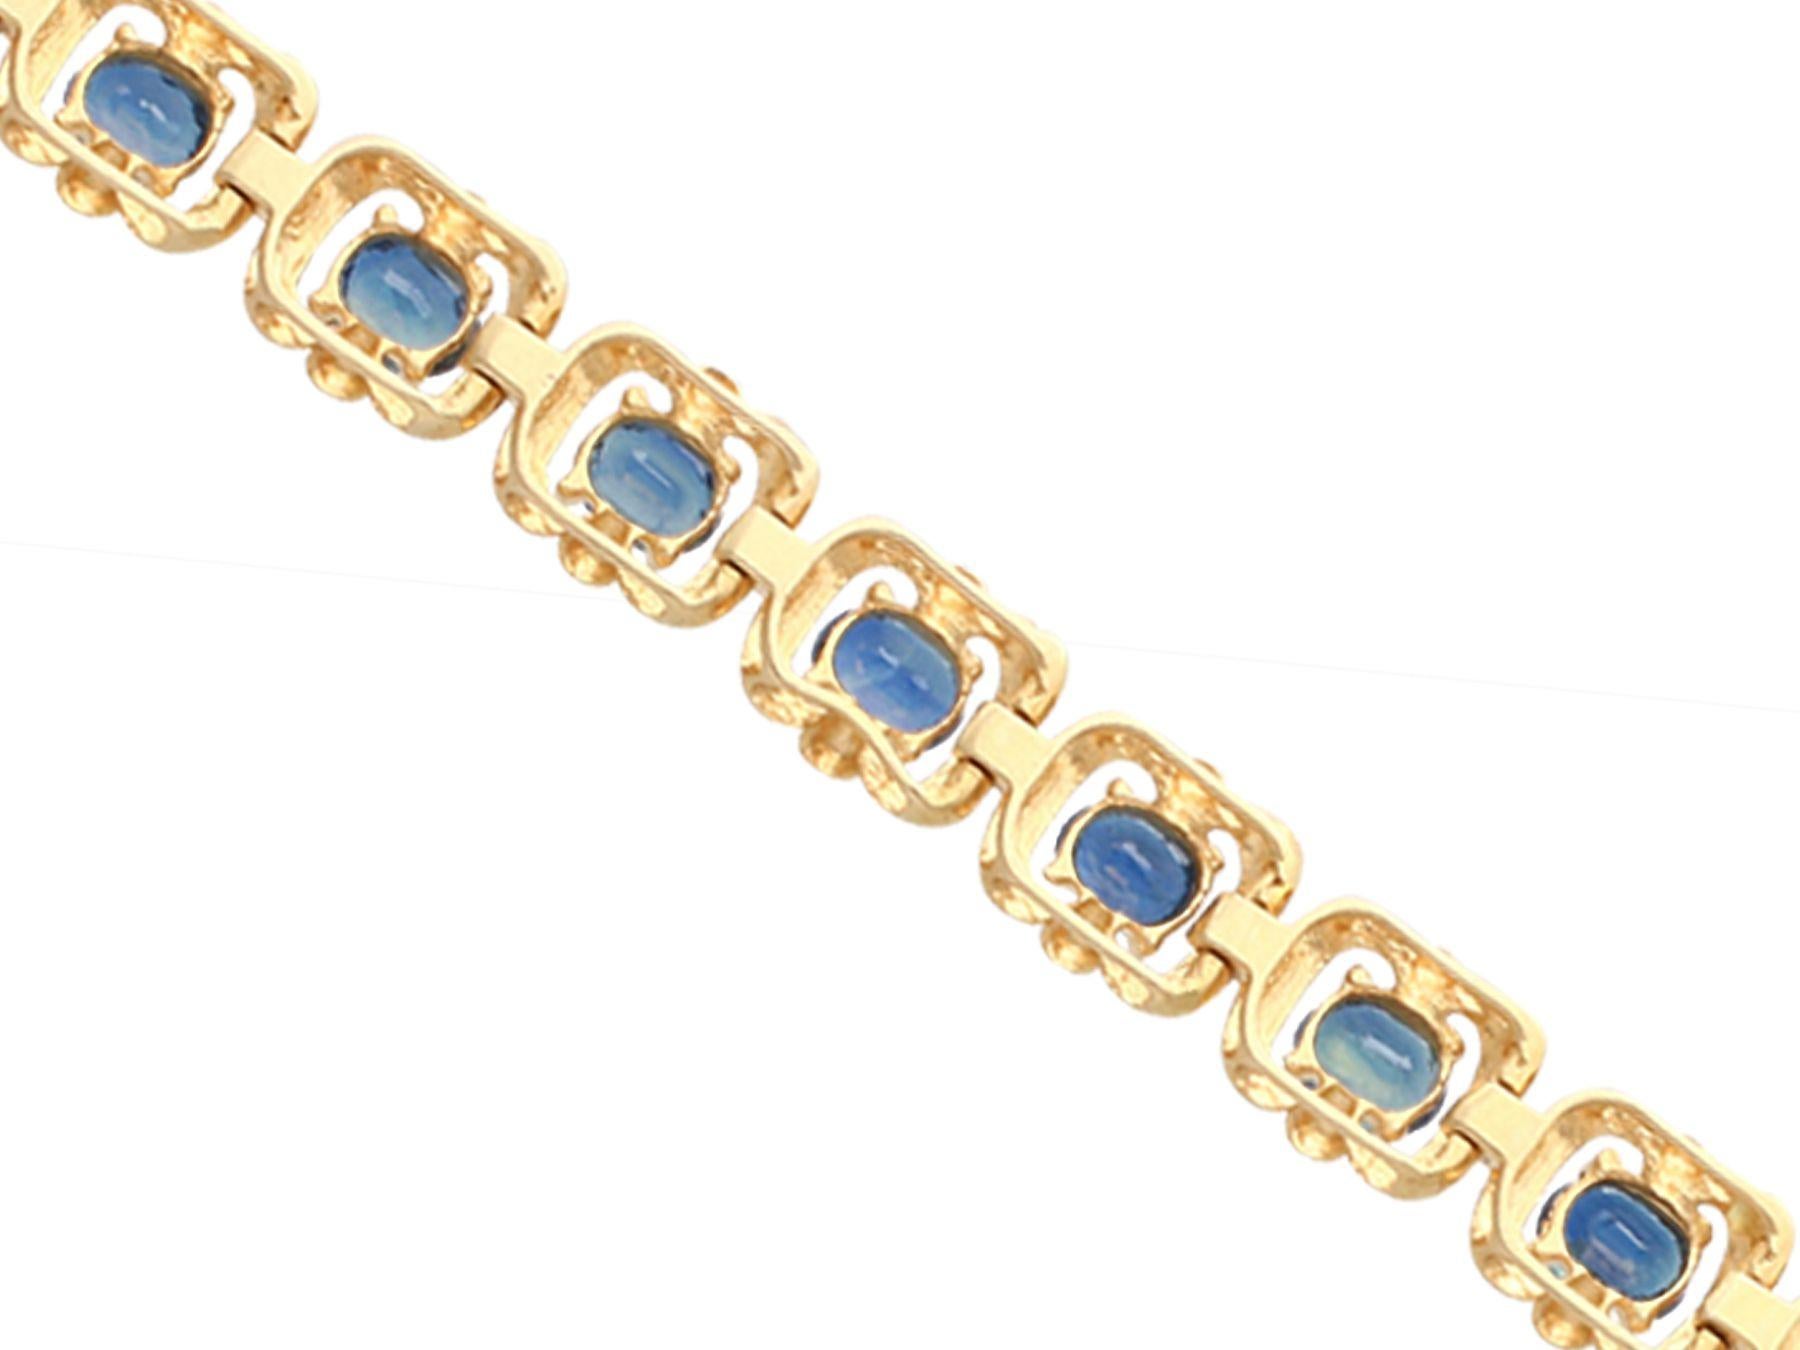 Oval Cut 1940s Vintage 4.60 Carat Blue Sapphire Yellow Gold Bracelet